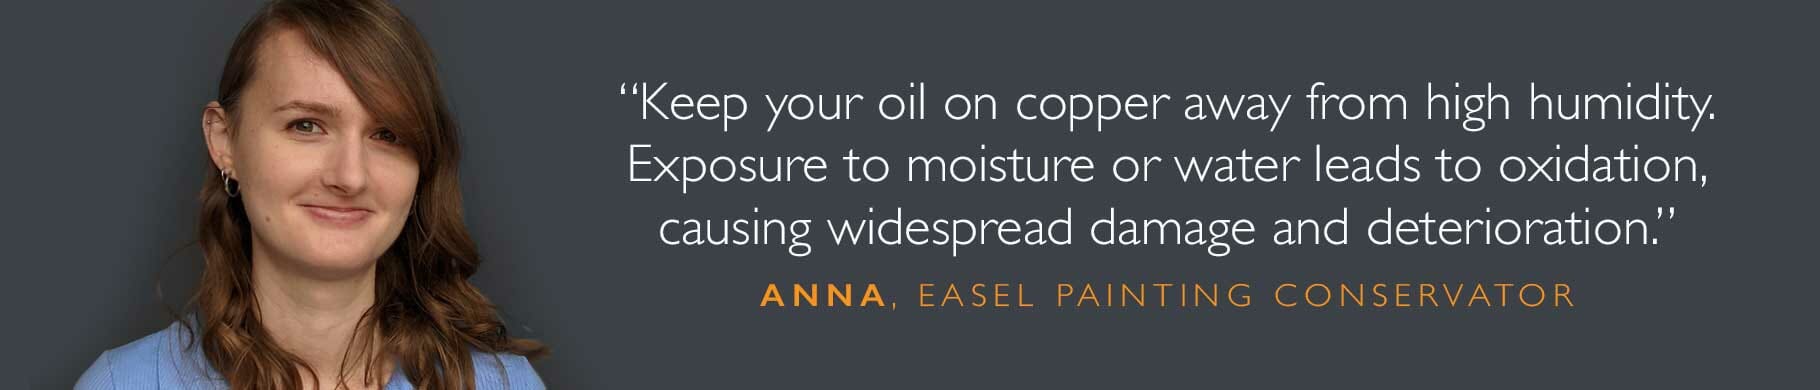 anna oil on copper restoration quote